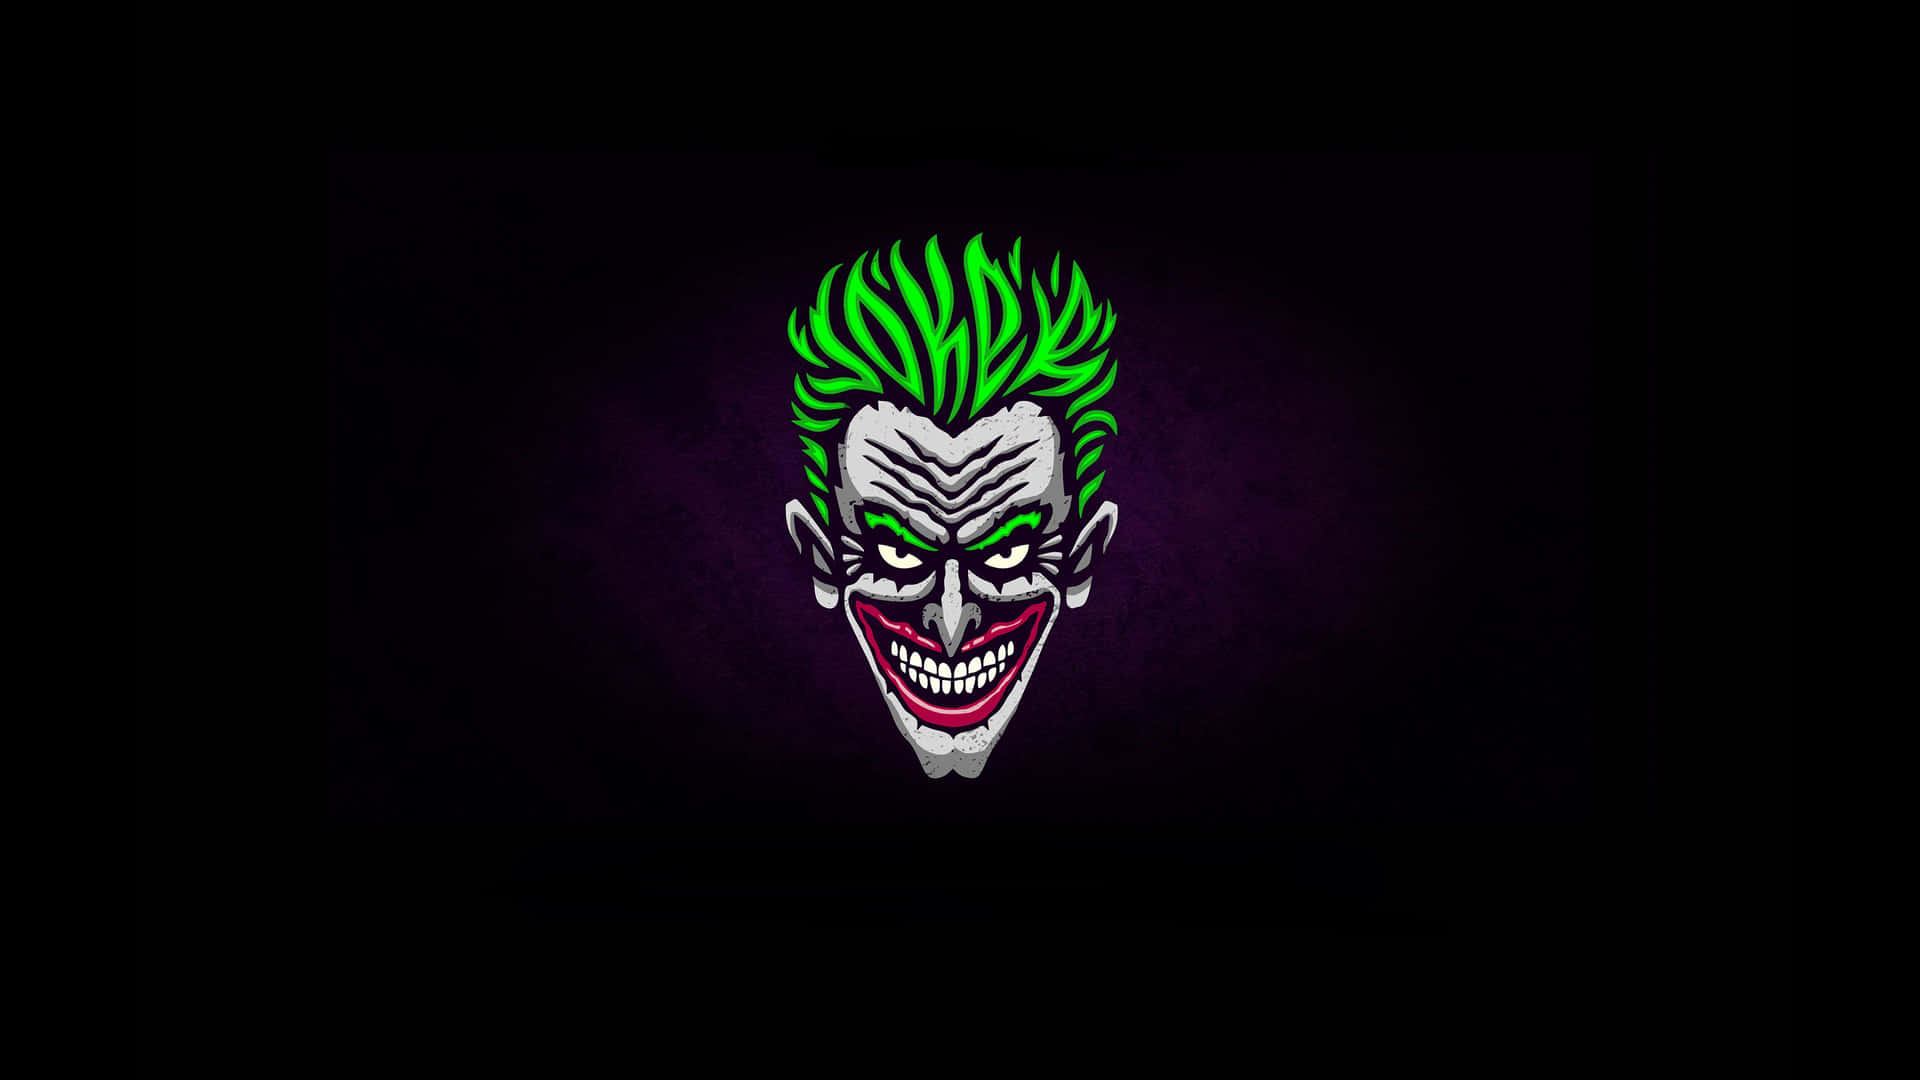 Vibrant Joker Artwork on a Dark Background Wallpaper